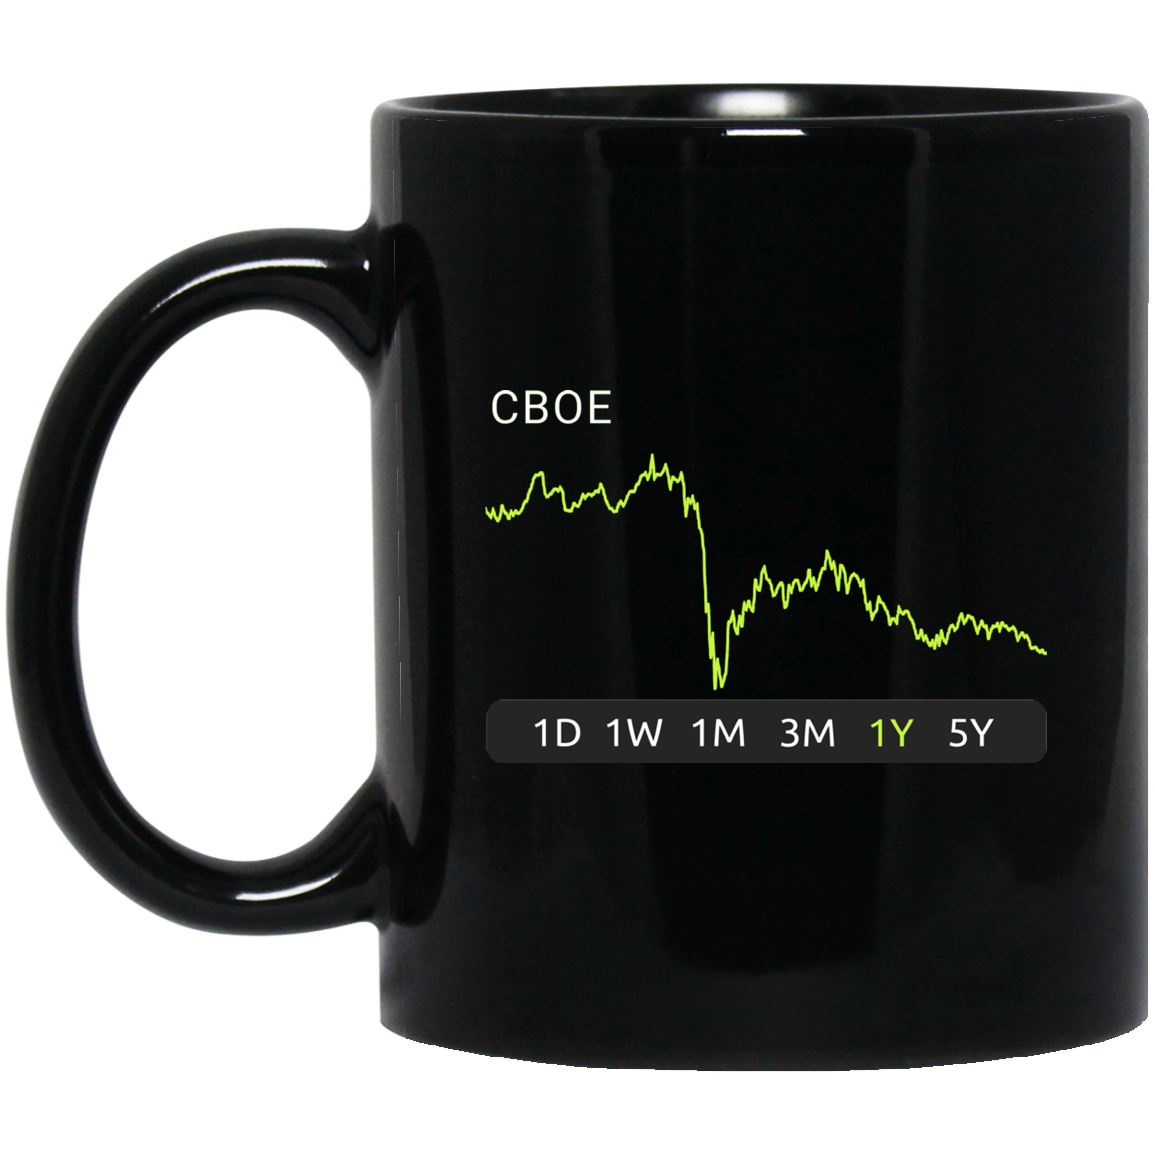 CB0E Stock 1y Mug